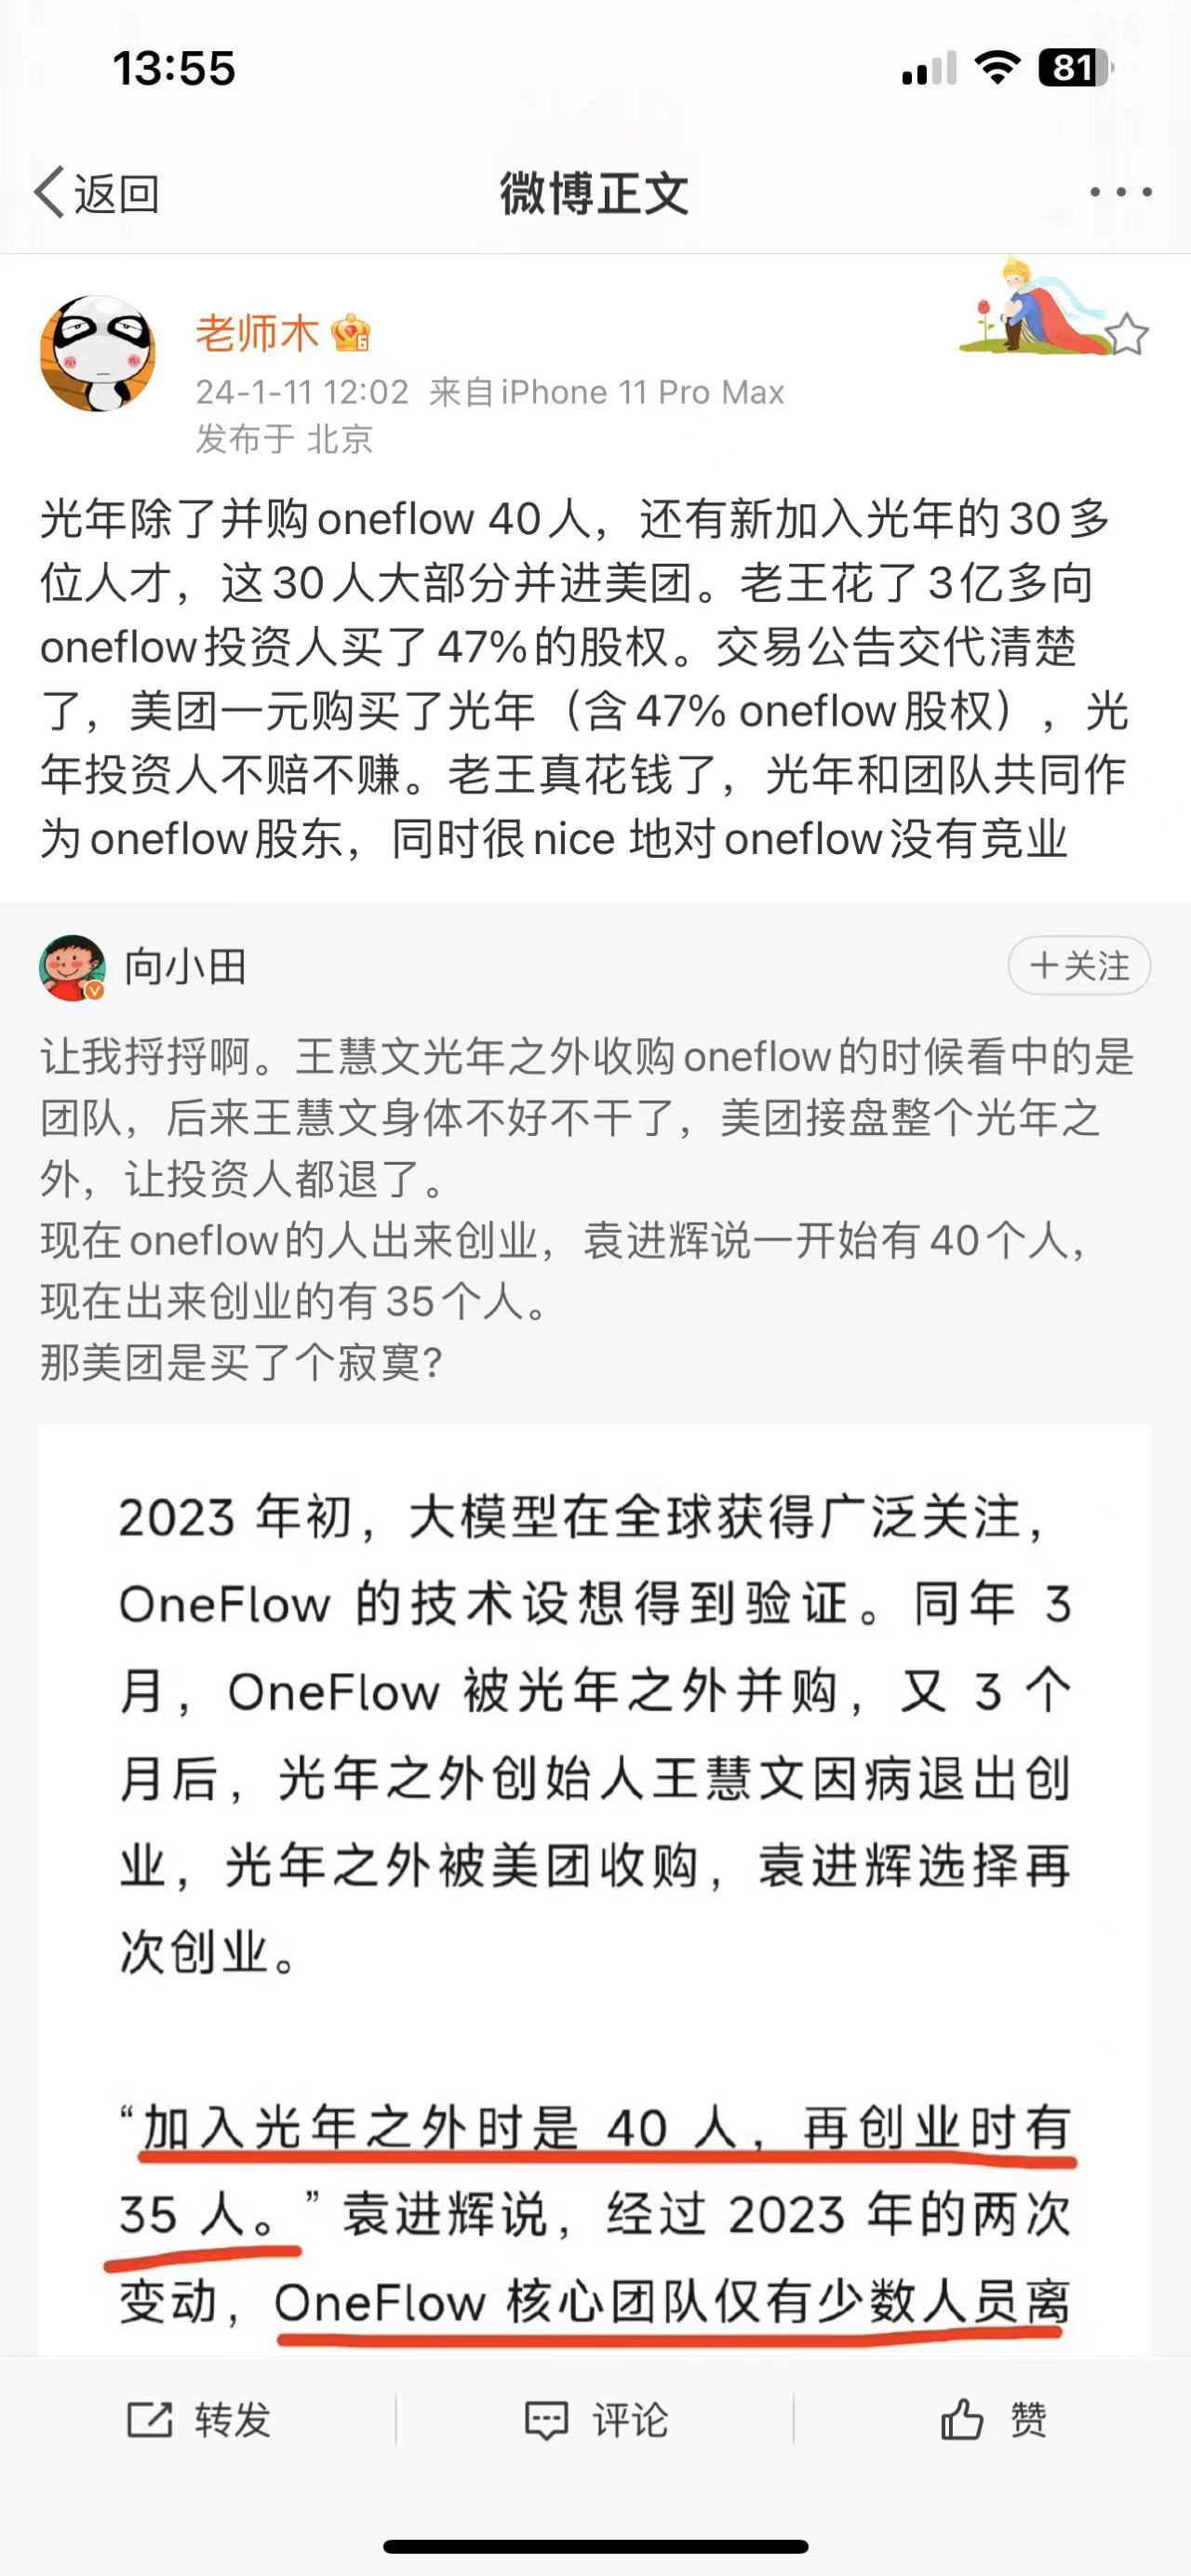 OneFlow创始人、光年之外联创袁进辉回应再创业：老王真花钱了 和光年没有竞业